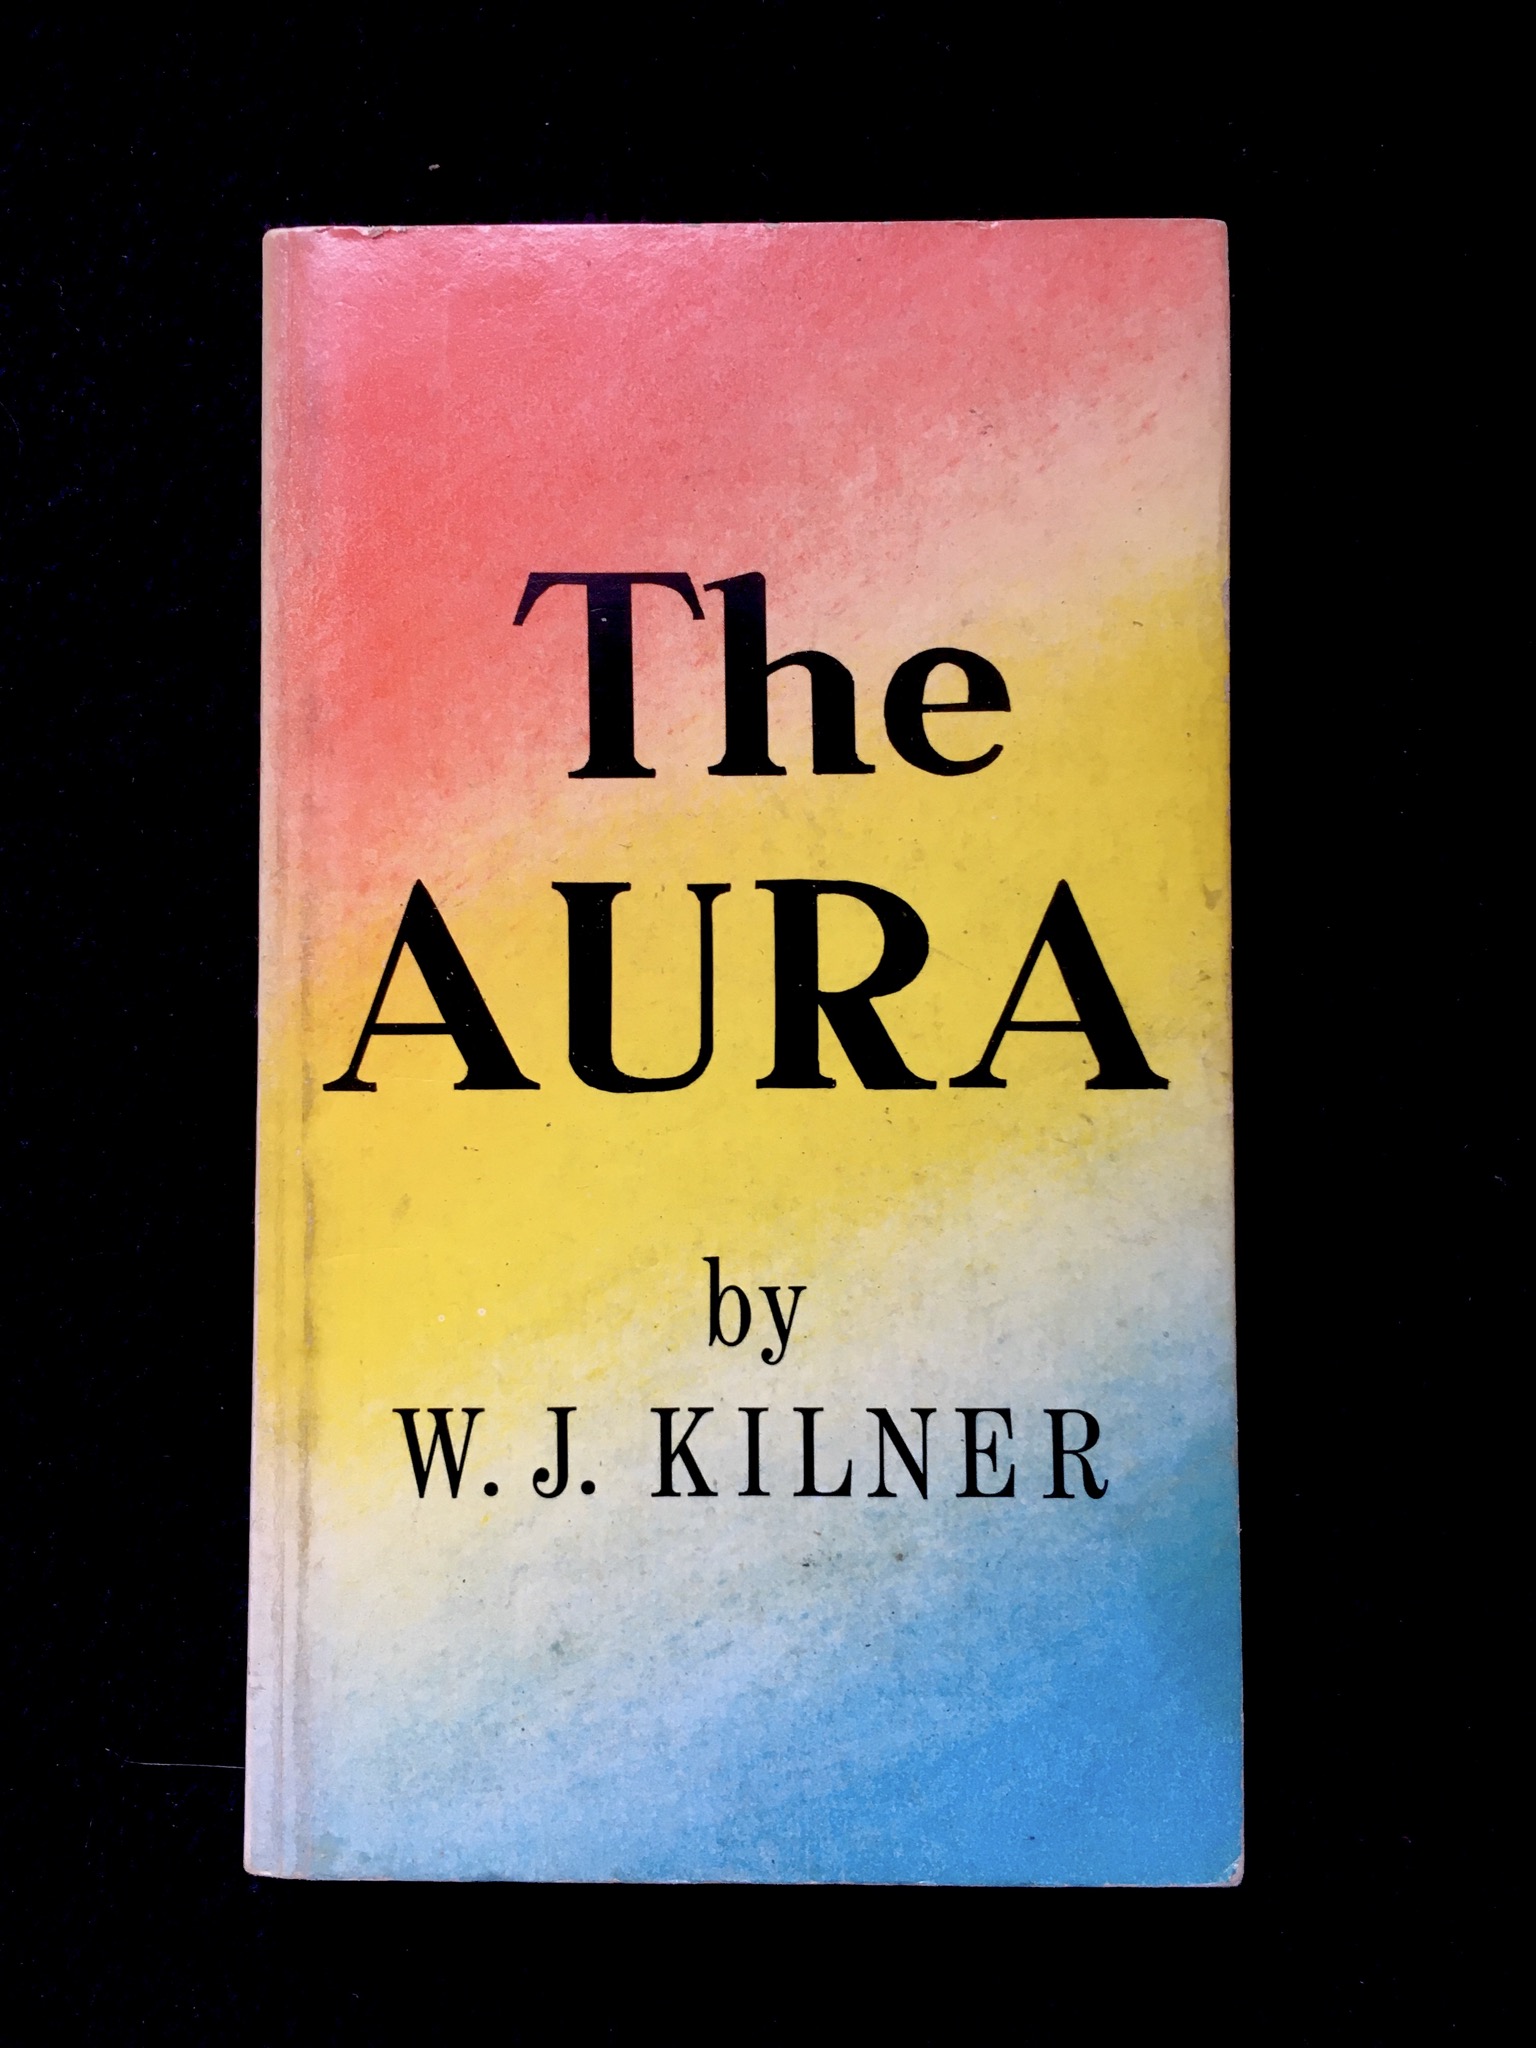 The Aura by W. J. Kilner